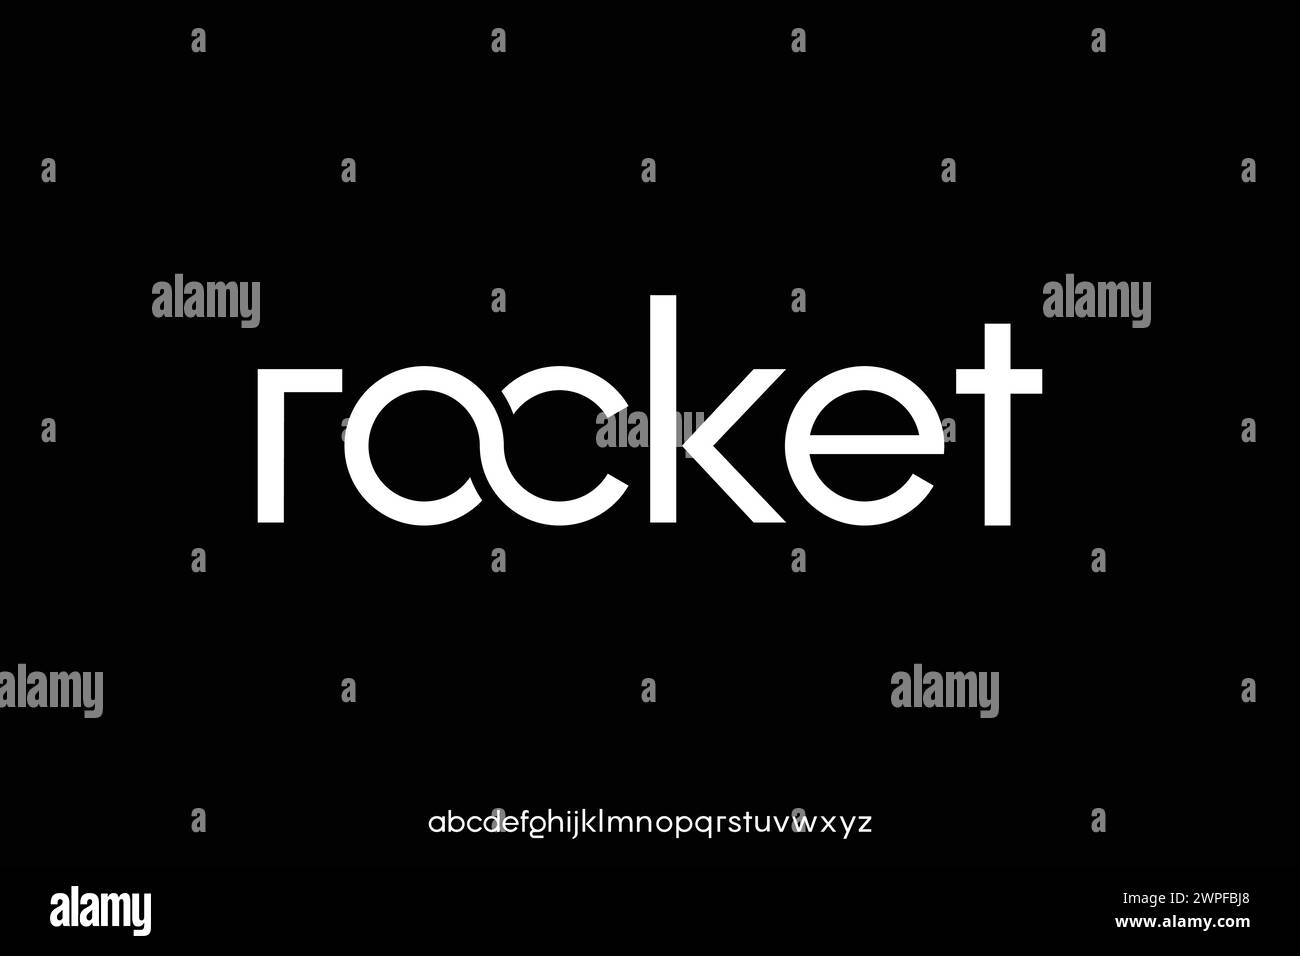 Modernes einfaches serifenloses Alphabet zeigt Schriftvektor mit Ligatur an. Raketenschriftart Stock Vektor